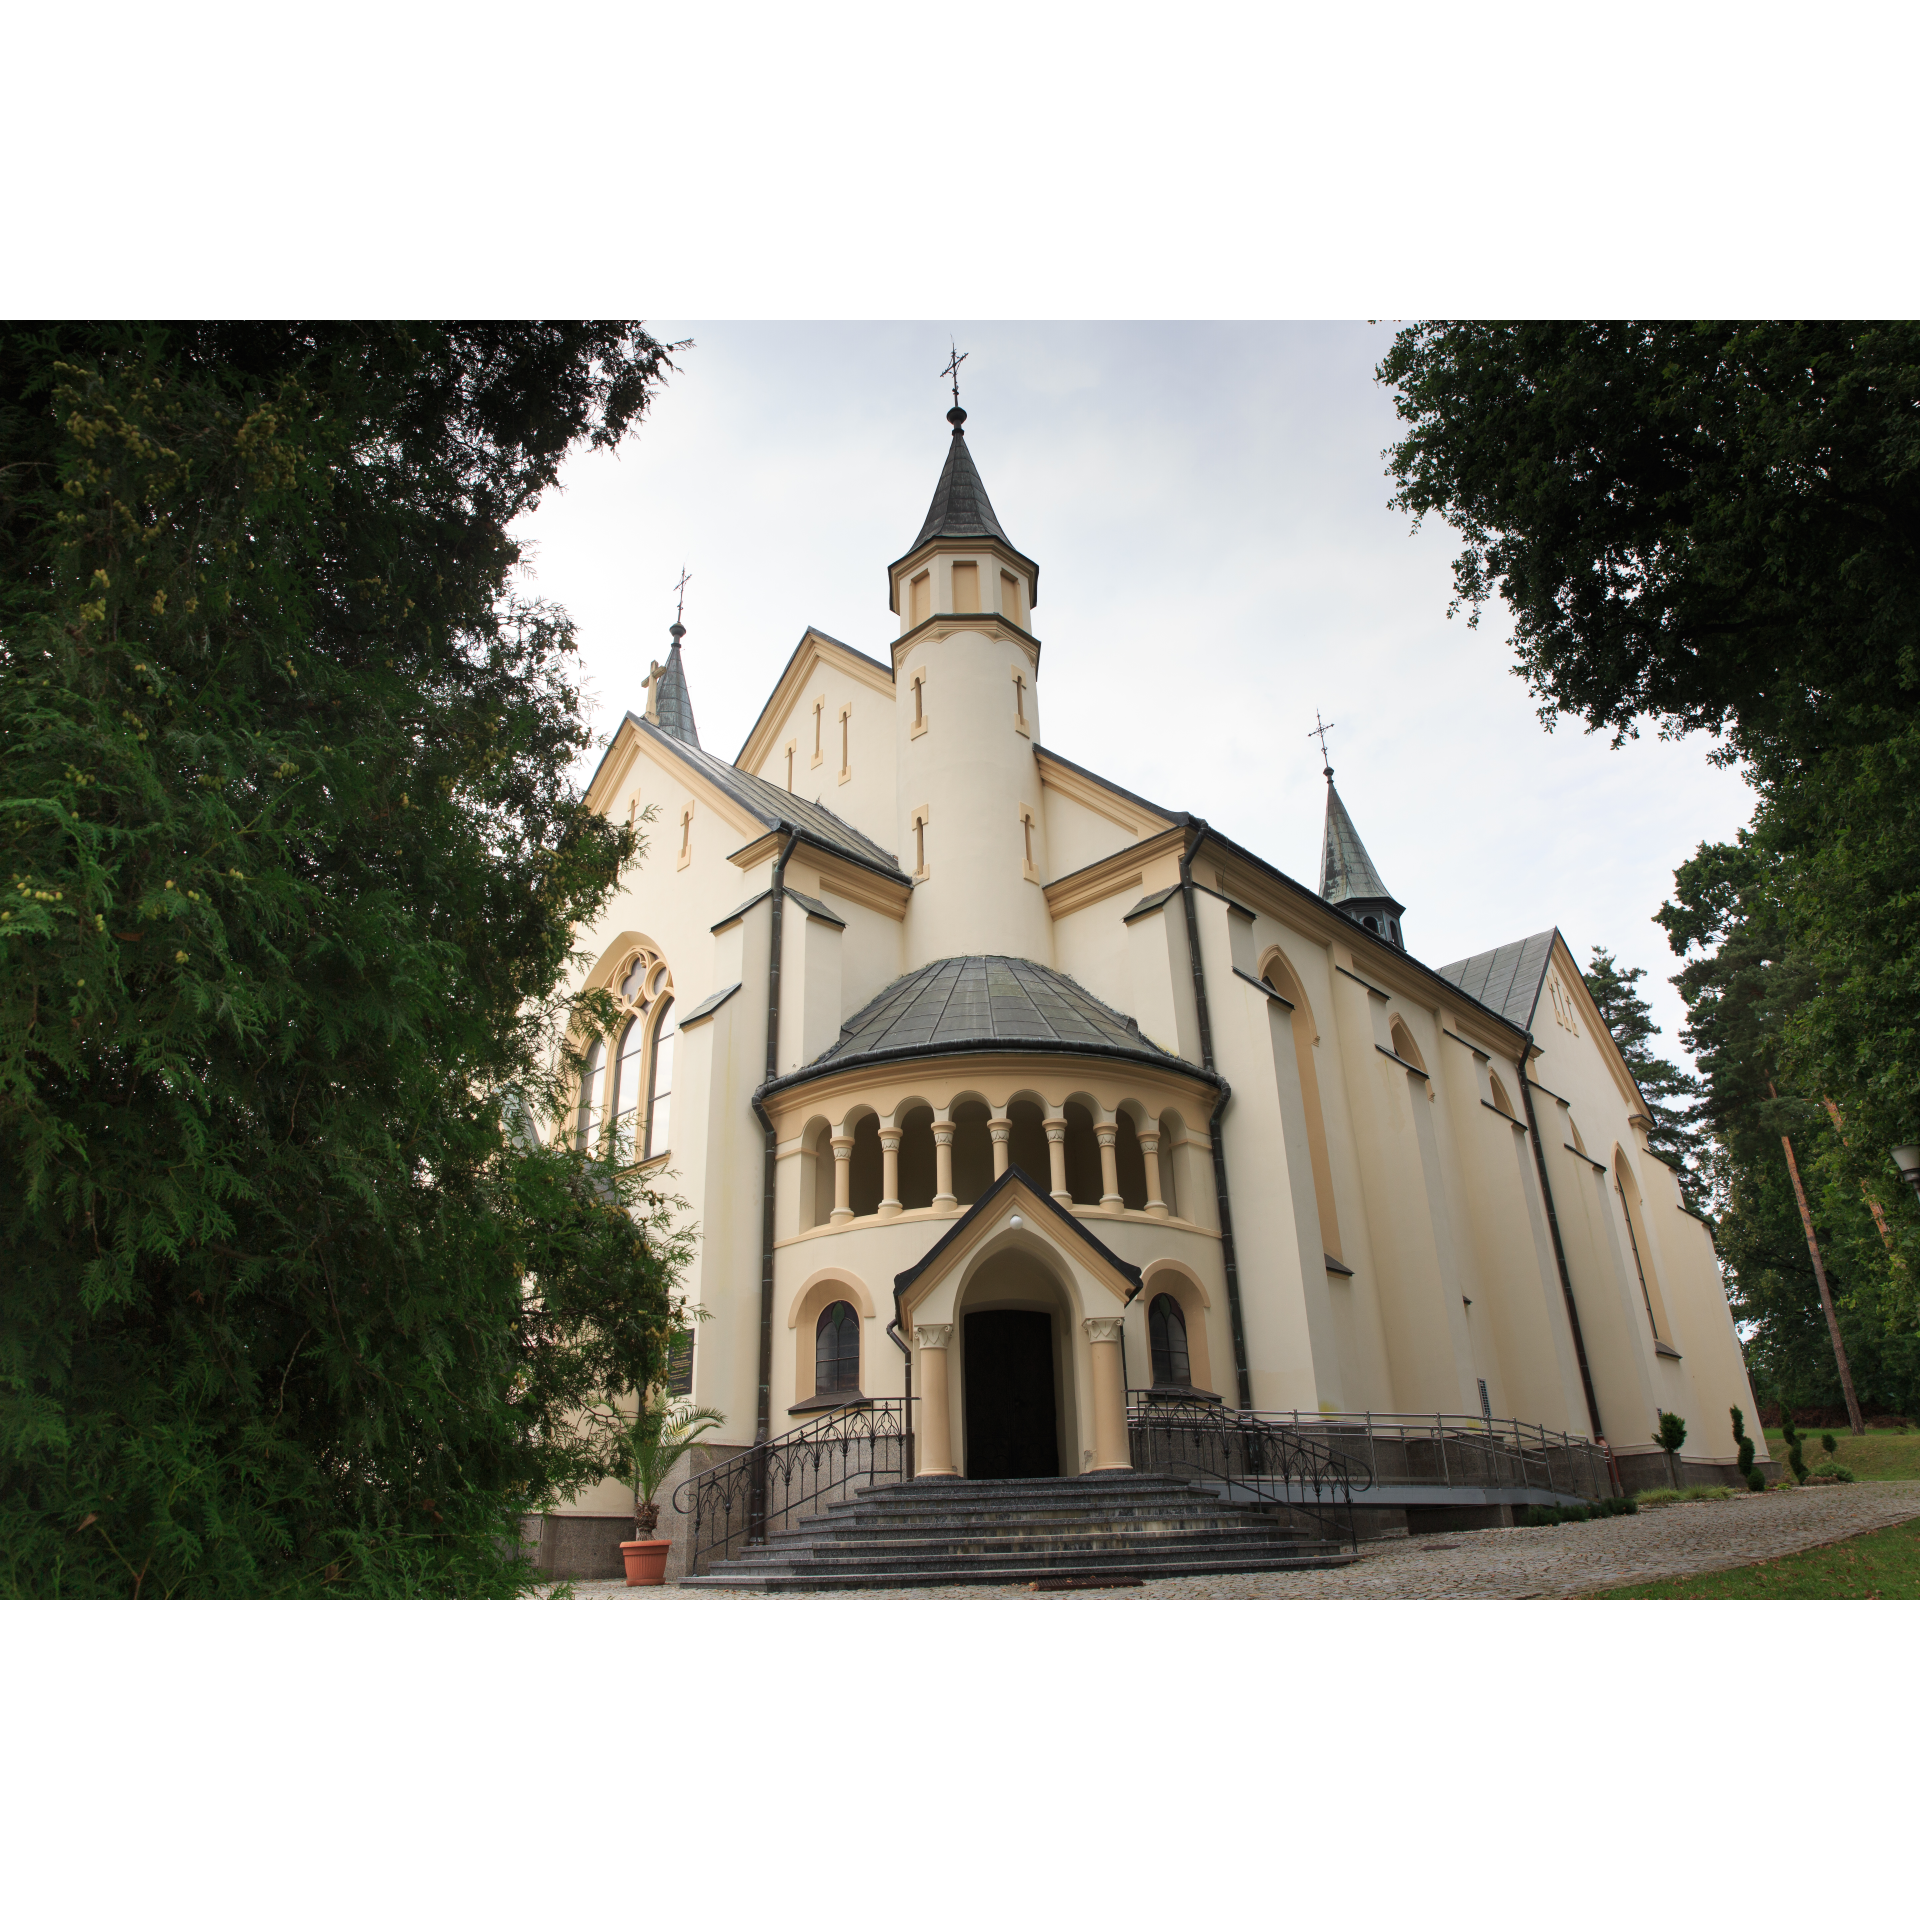 Kościół Rzymskokatolicki pw. św. Mikołaja w Kraczkowej